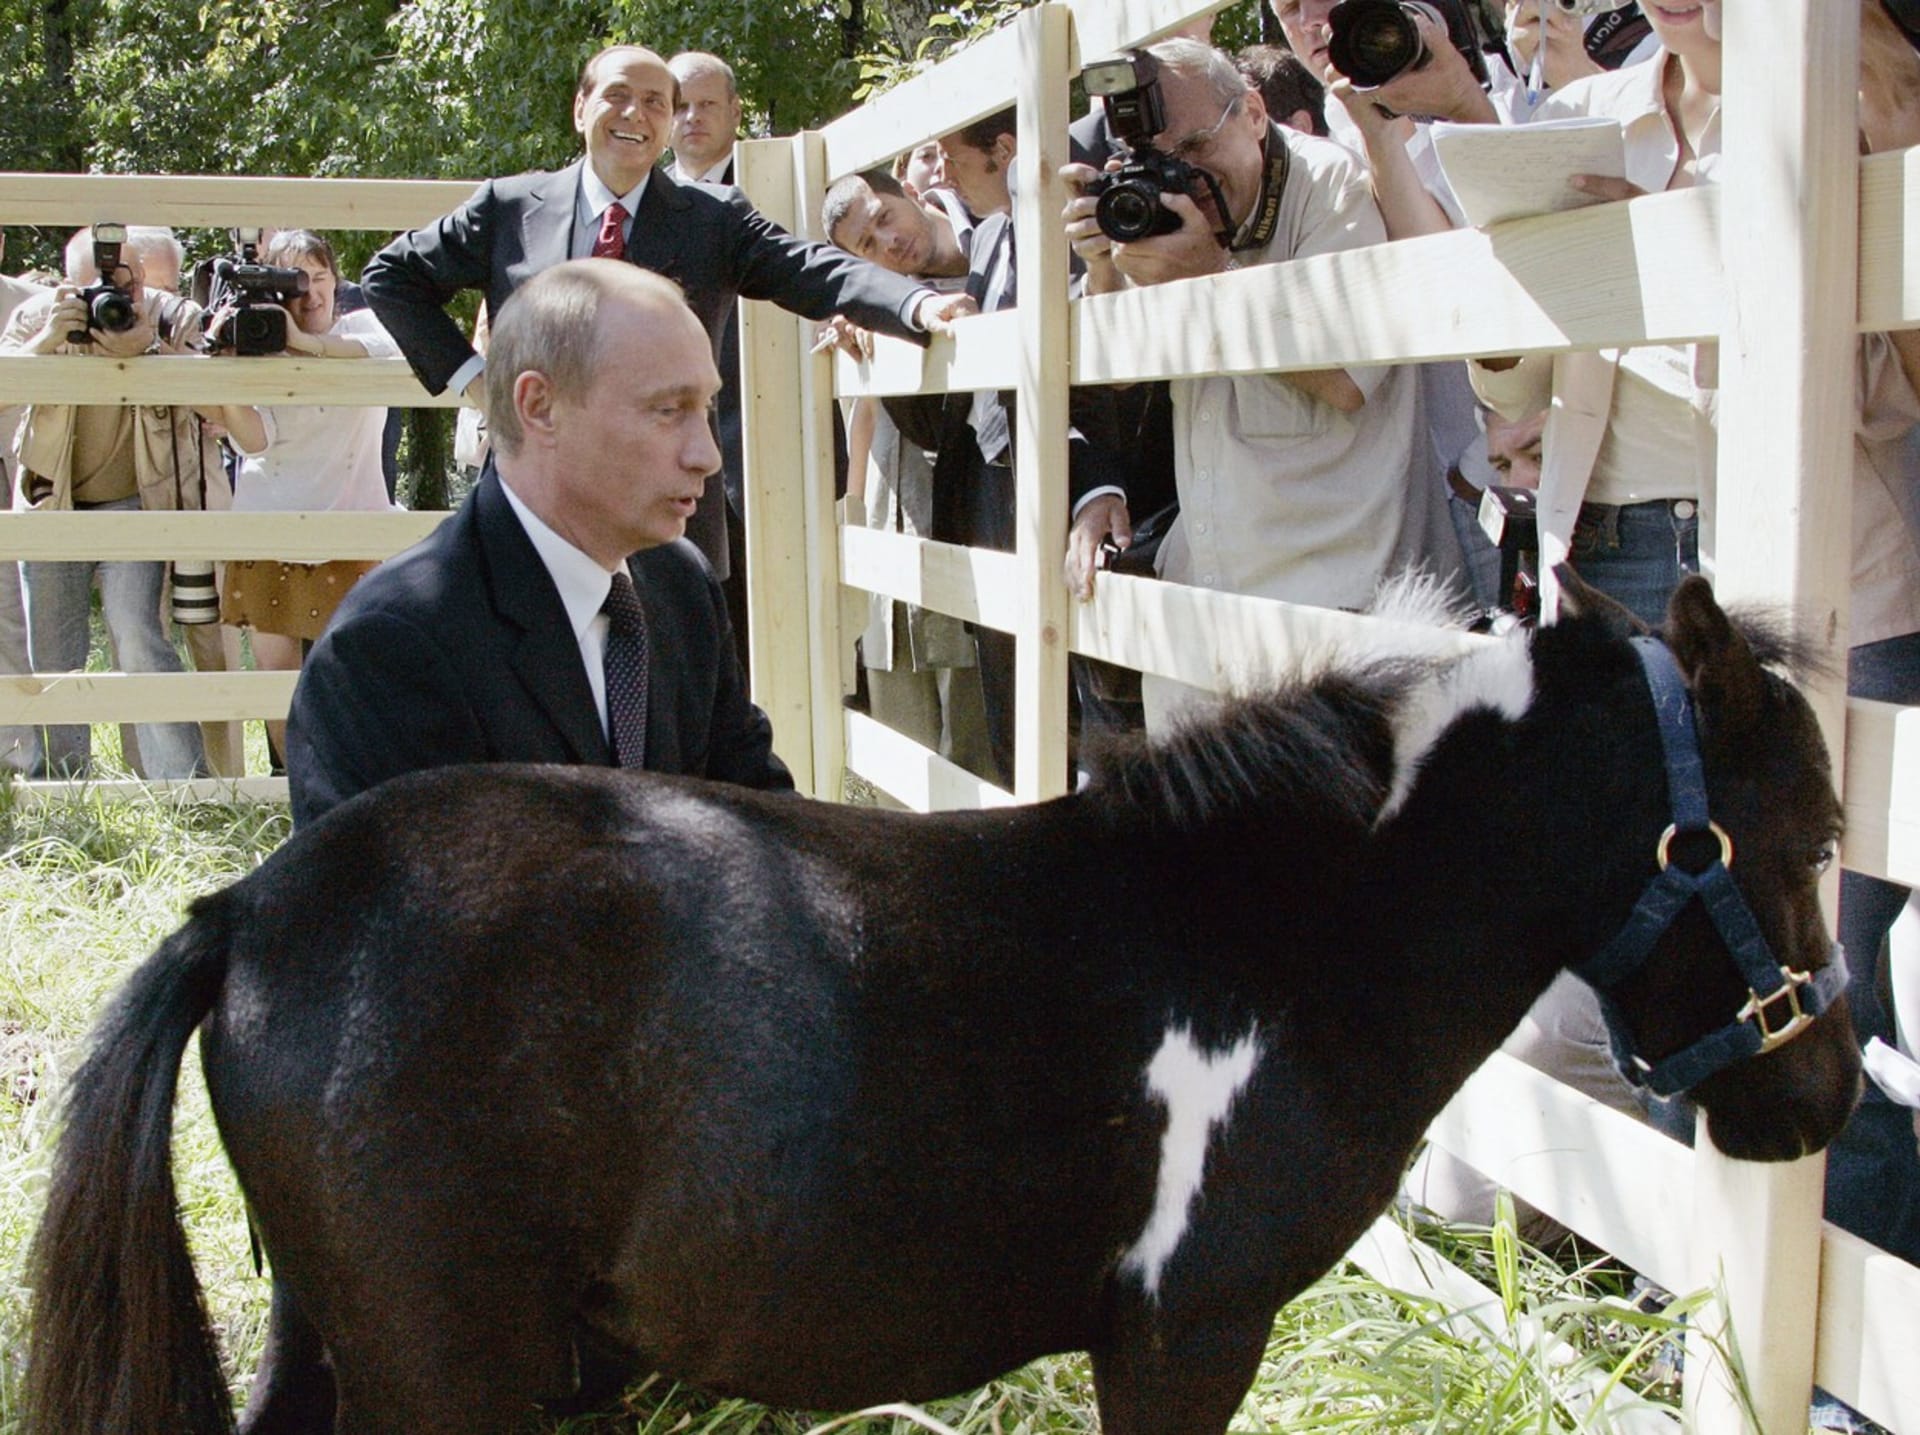 Ruský prezident Vladimir Putin vyobrazený jako trpaslík. Podobné internetové vtipy dělají ruským cenzorům vrásky.